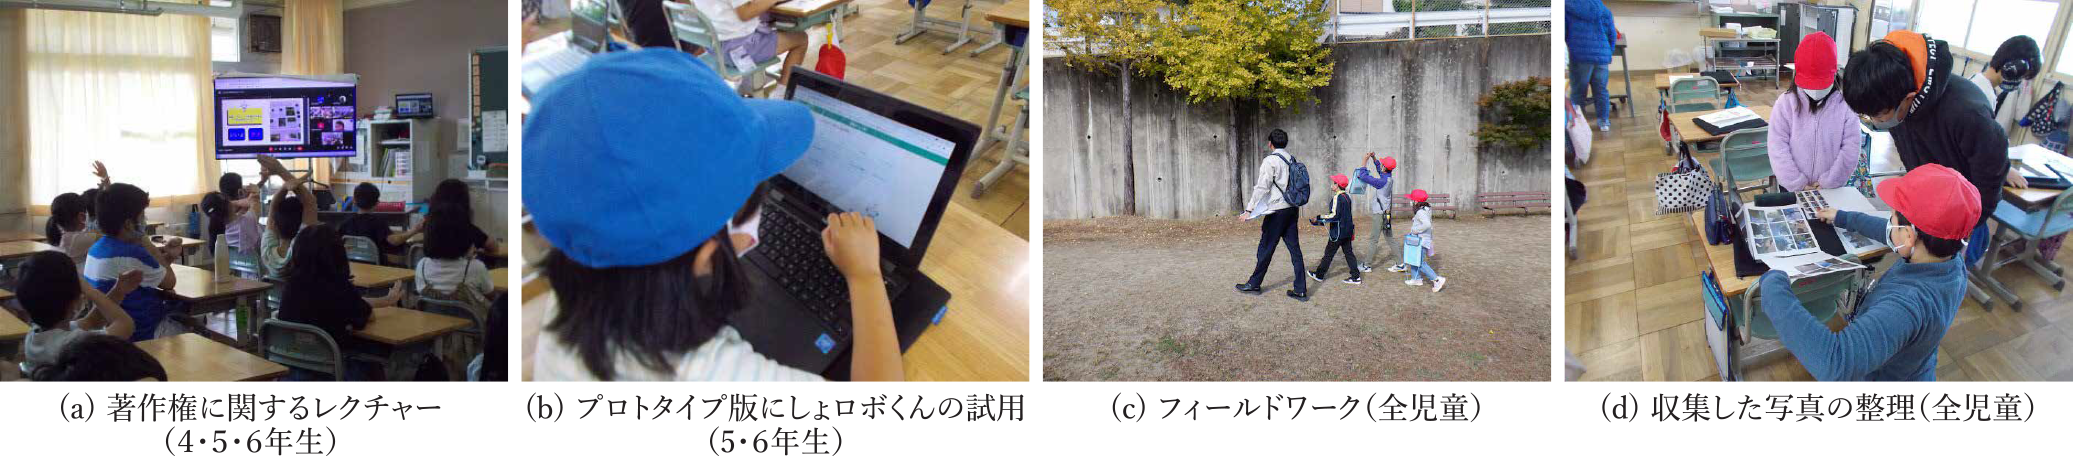 2学期のはばたきタイム実施の様子　Photos of activity of “Habataki-Time” at 2nd semester.